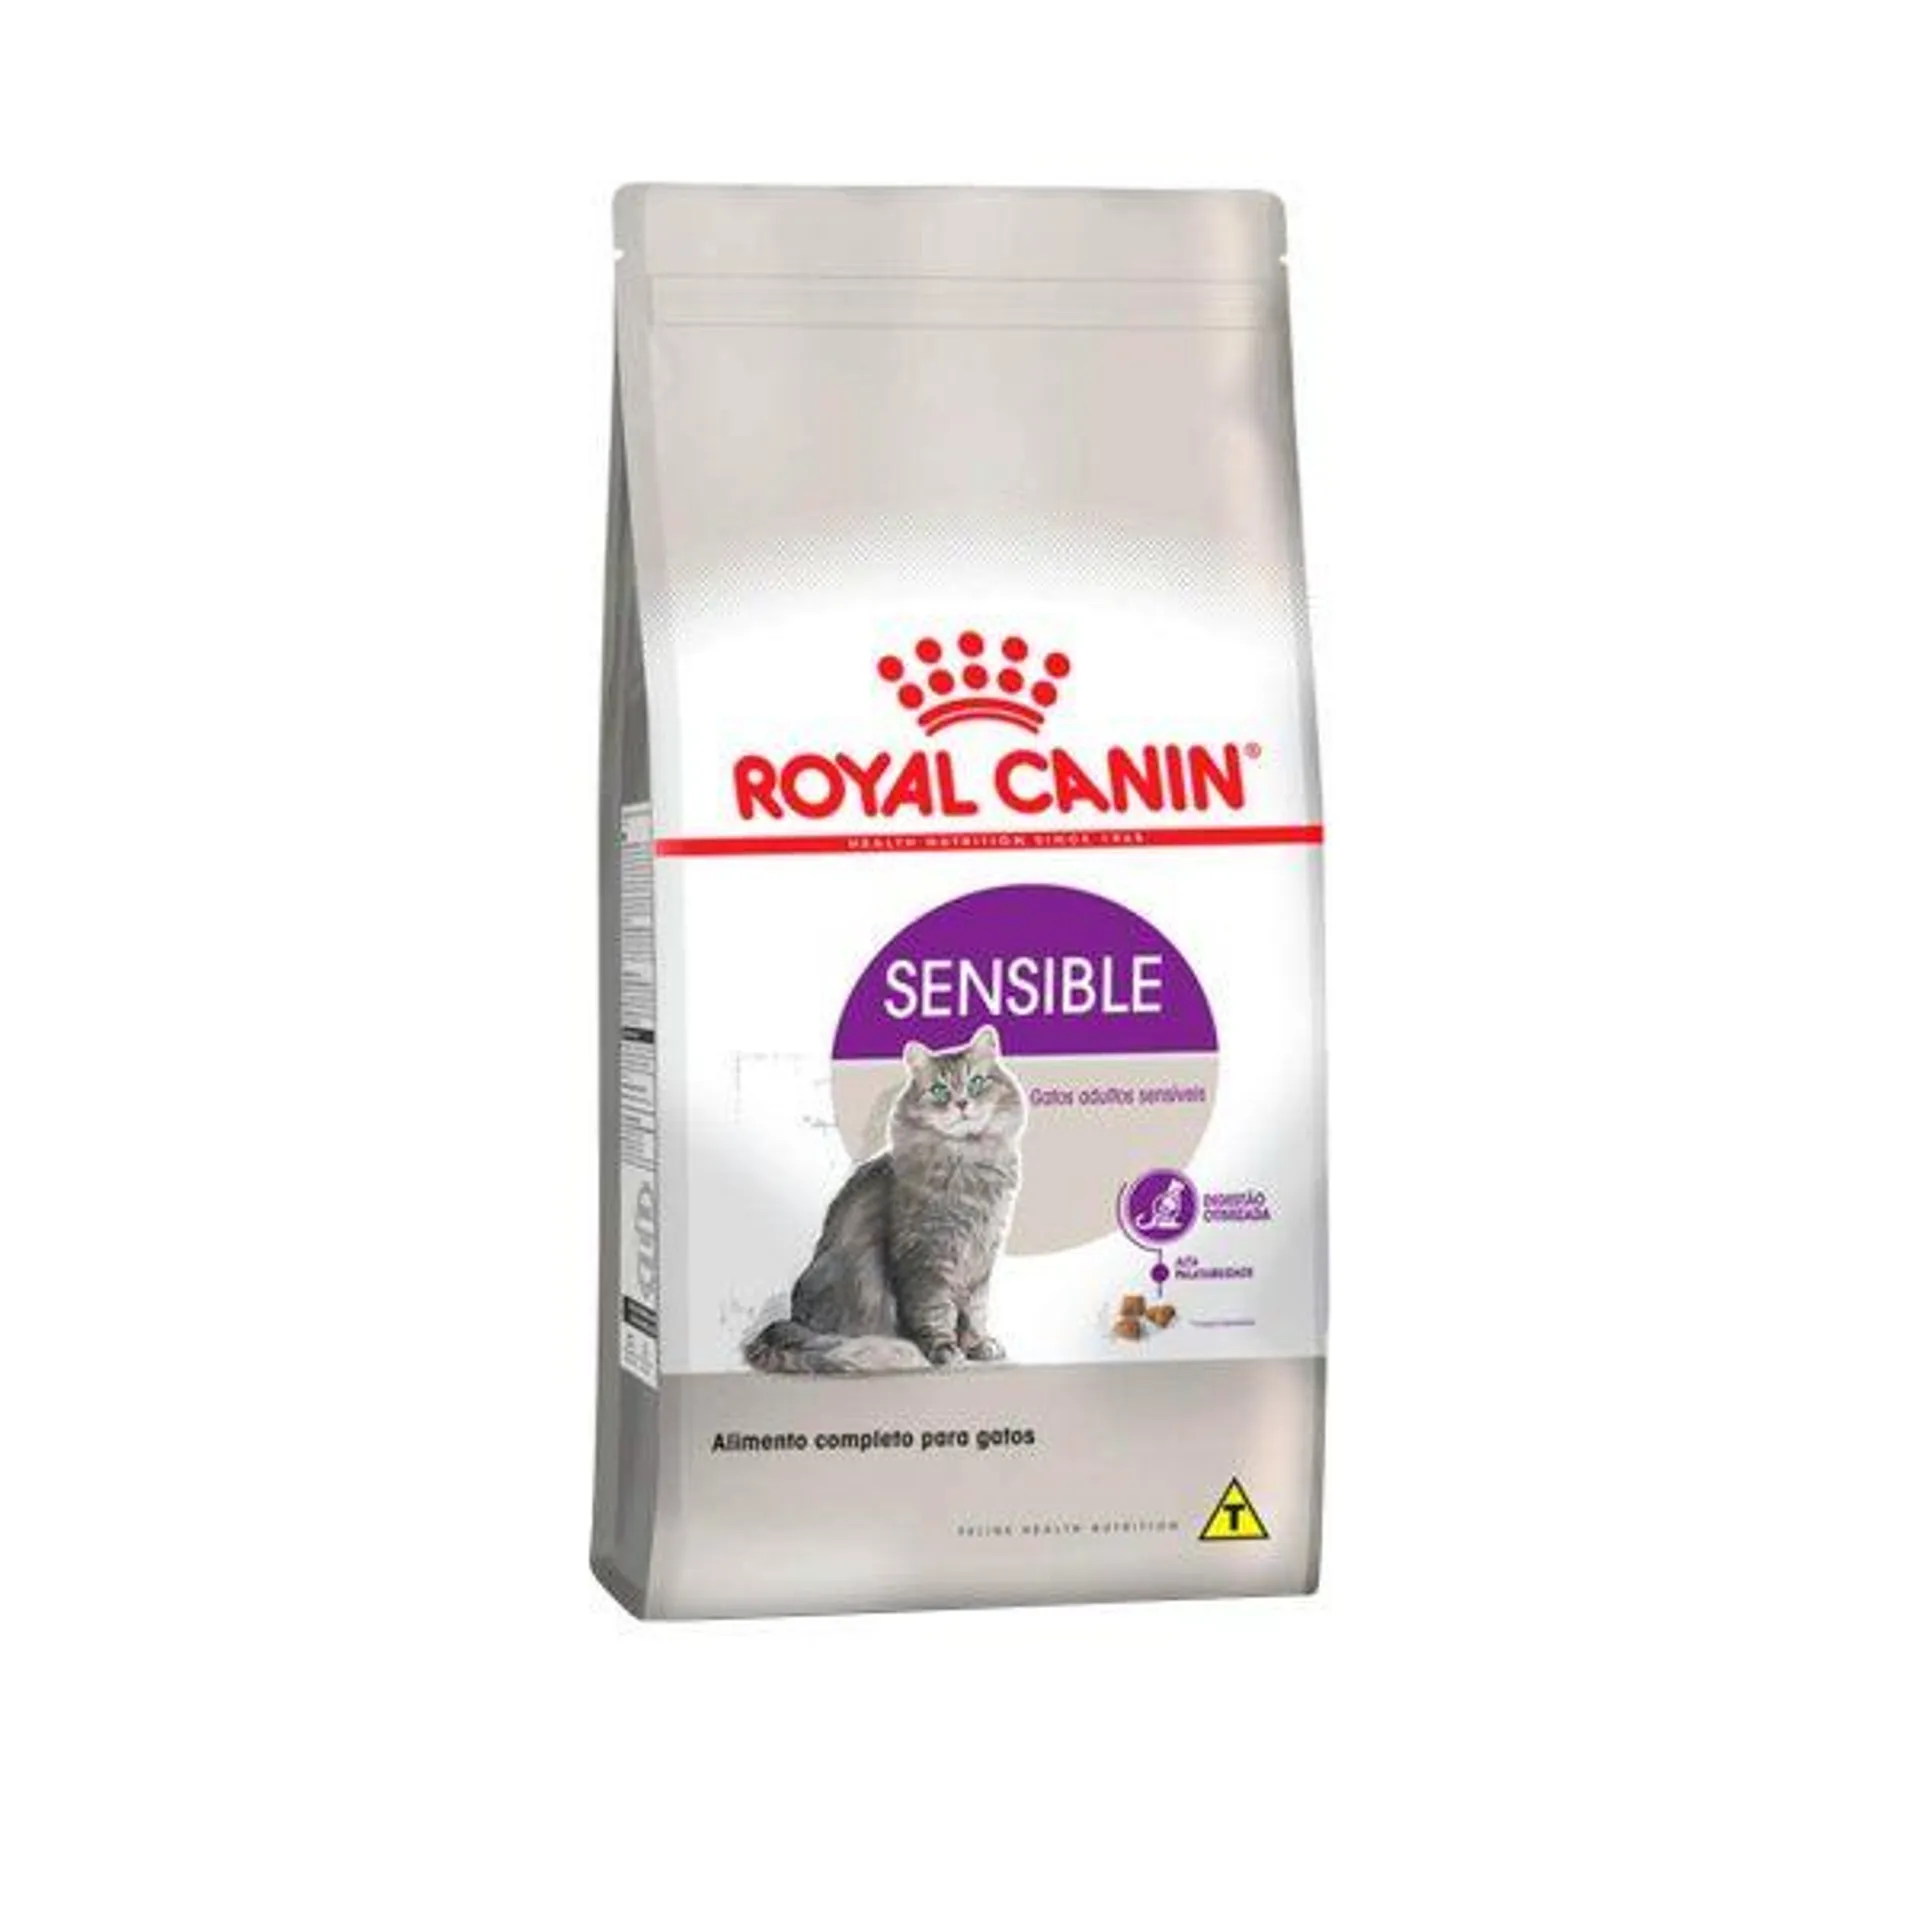 Royal Canin Felino Sensible 7.5 Kgs